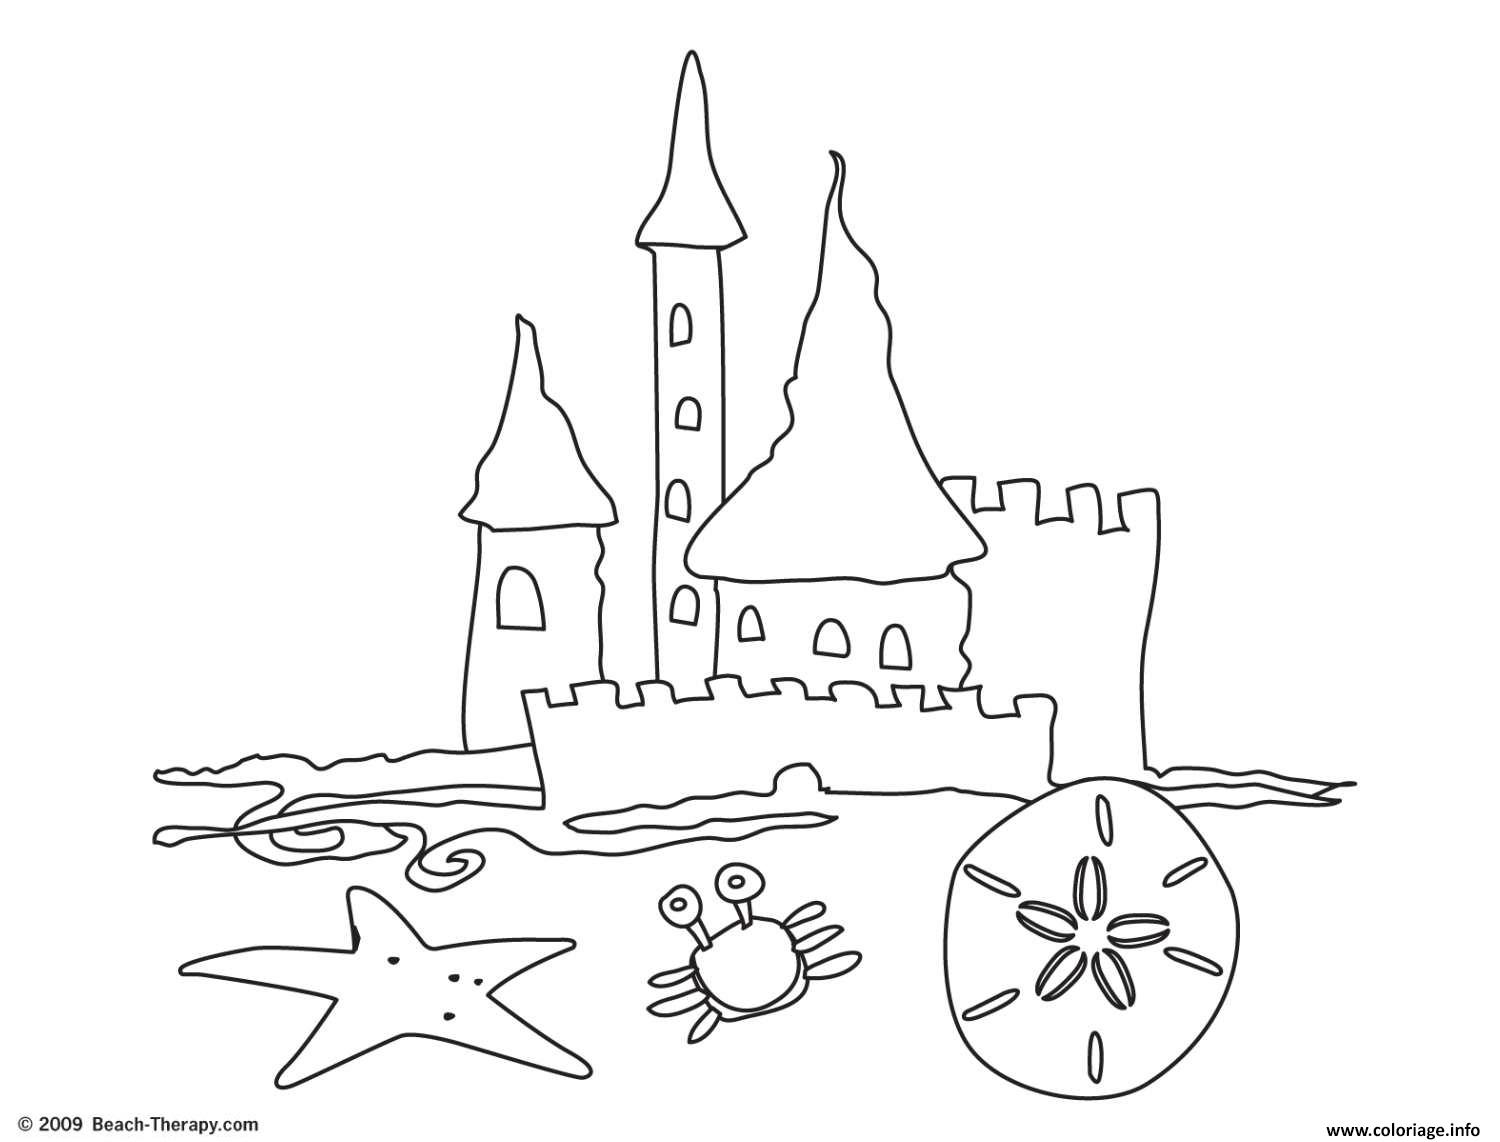 coloriage chateau de sable plage facile dessin imprimer with coloriage chateau